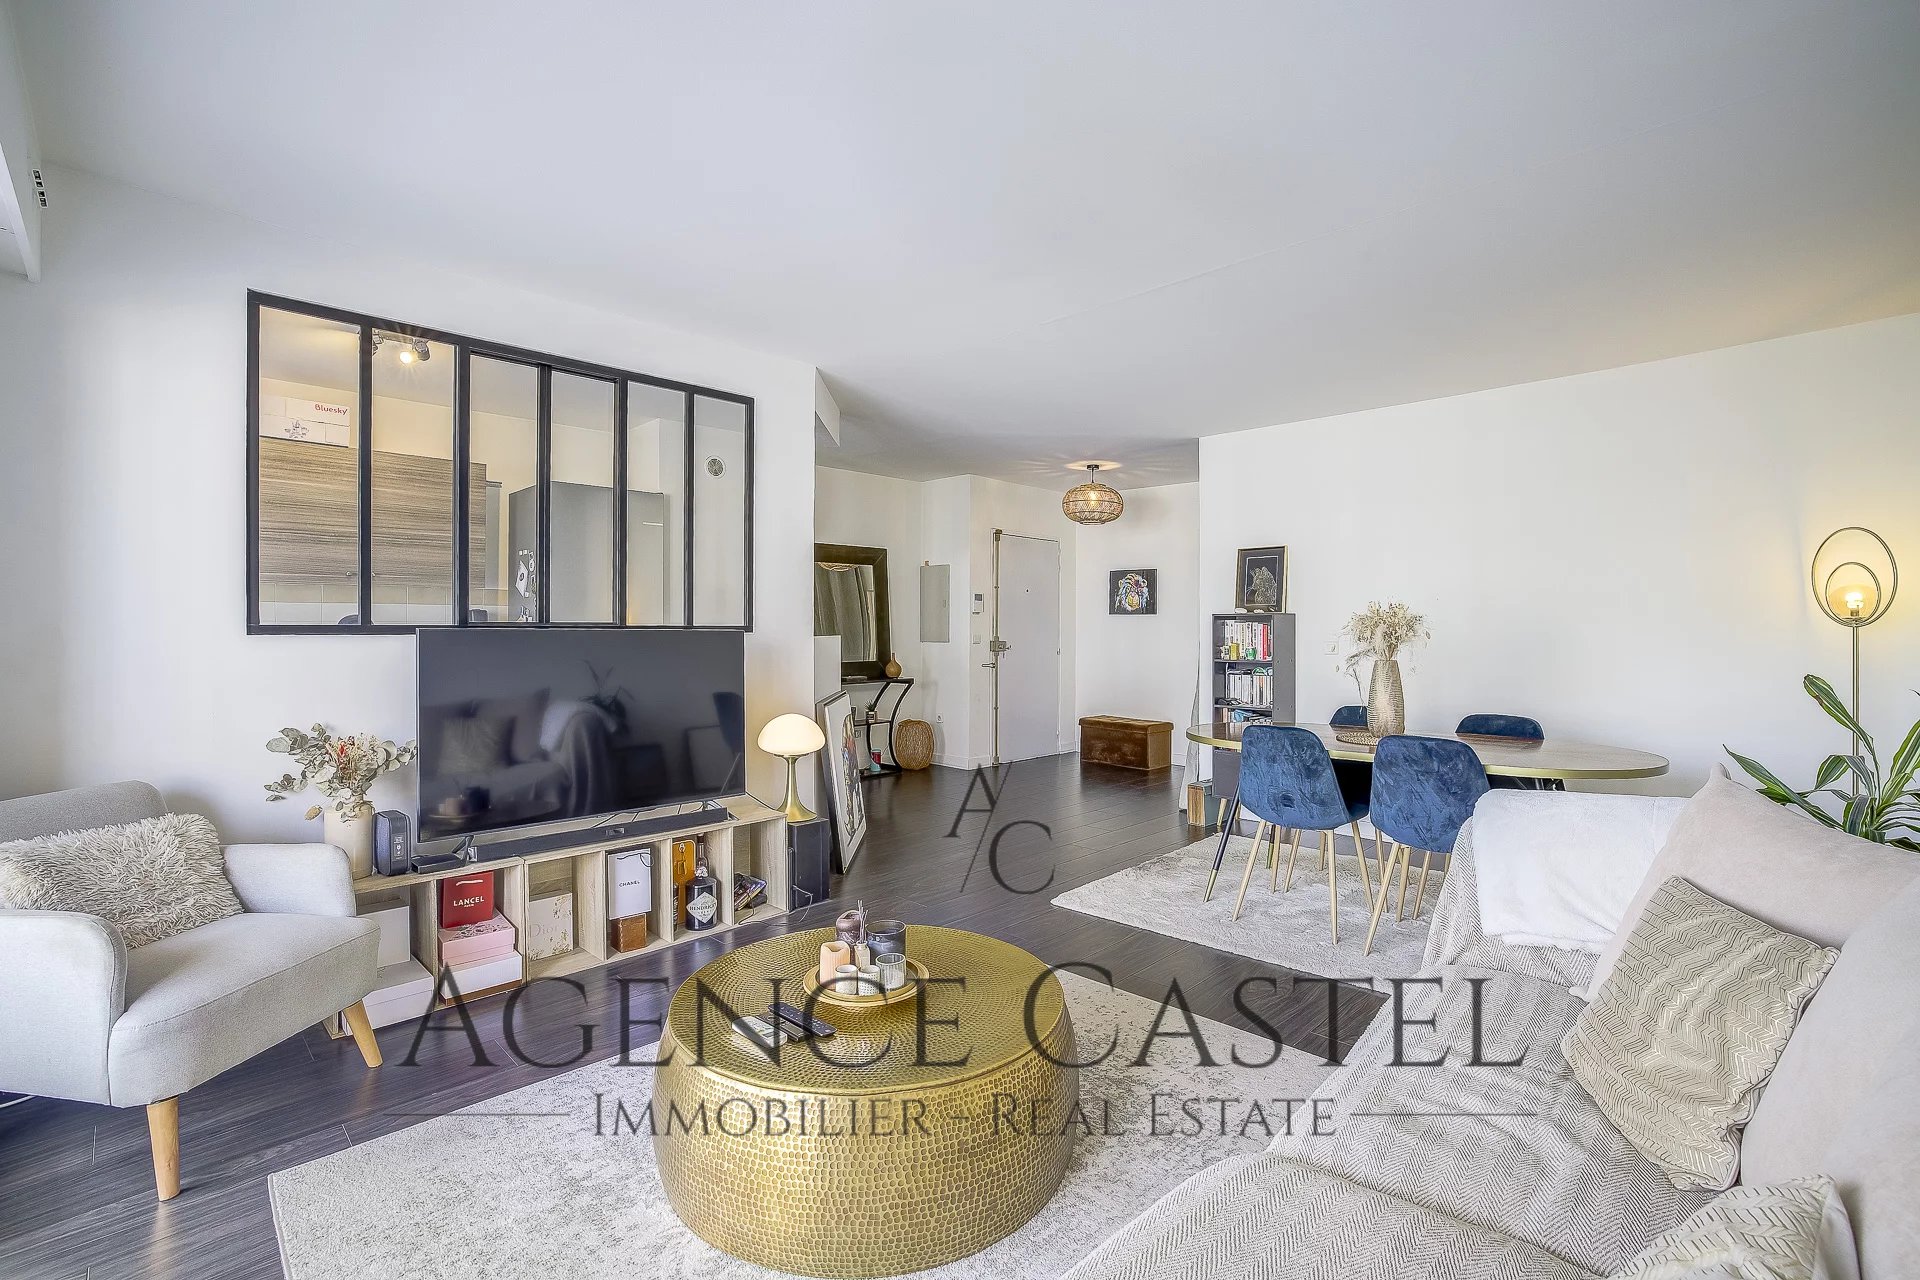 Vente Appartement 73m² 3 Pièces à Nice (06000) - Agence Castel